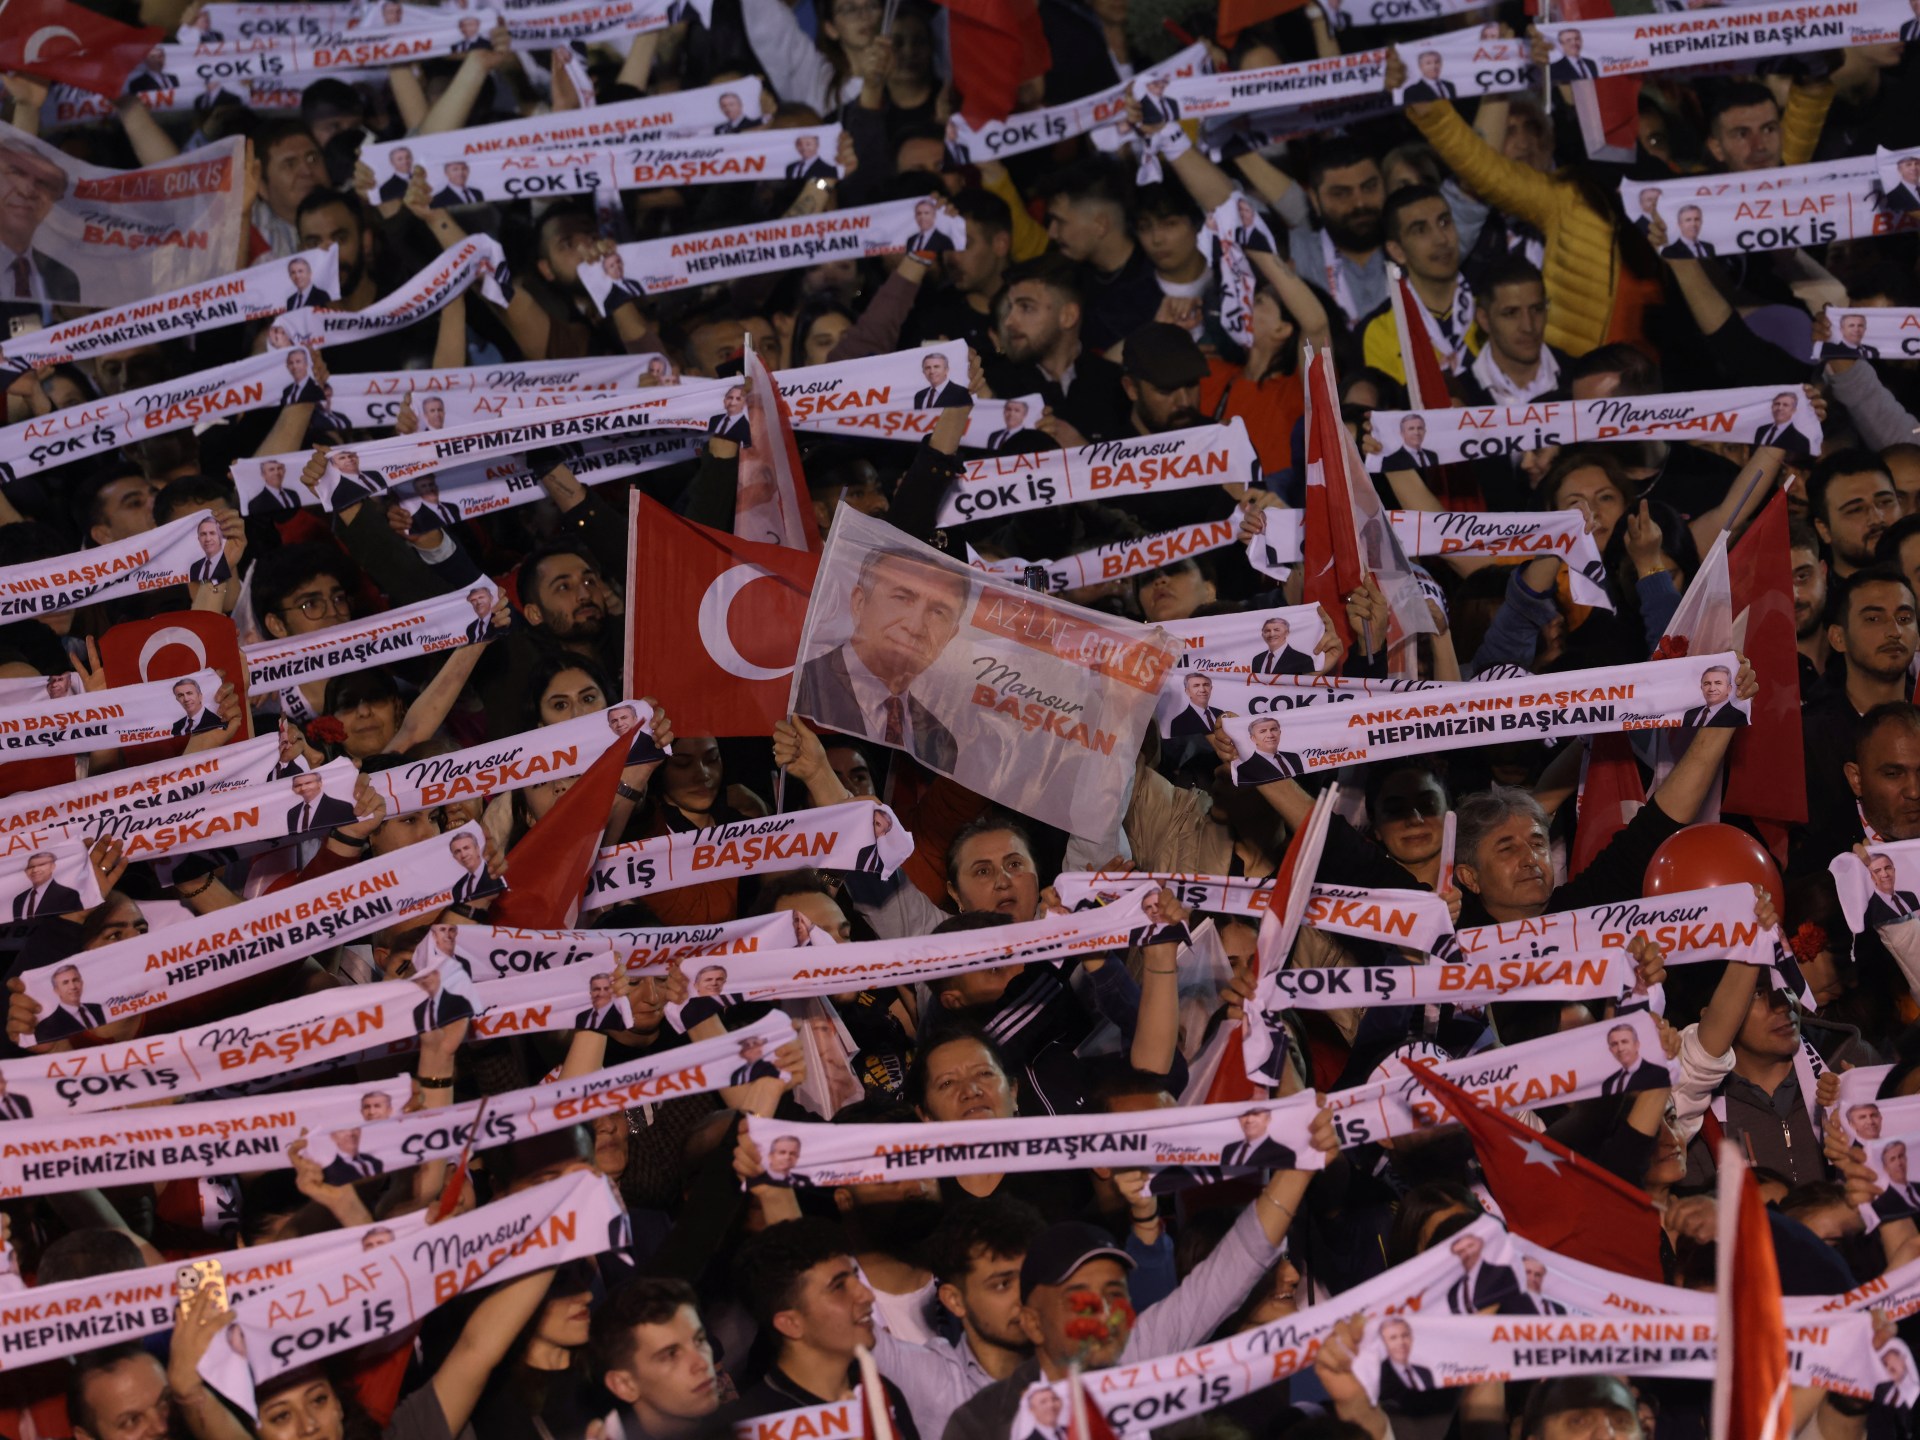 المعارضة التركية أيضًا تحتاج إلى استيعاب درس الانتخابات | سياسة – البوكس نيوز